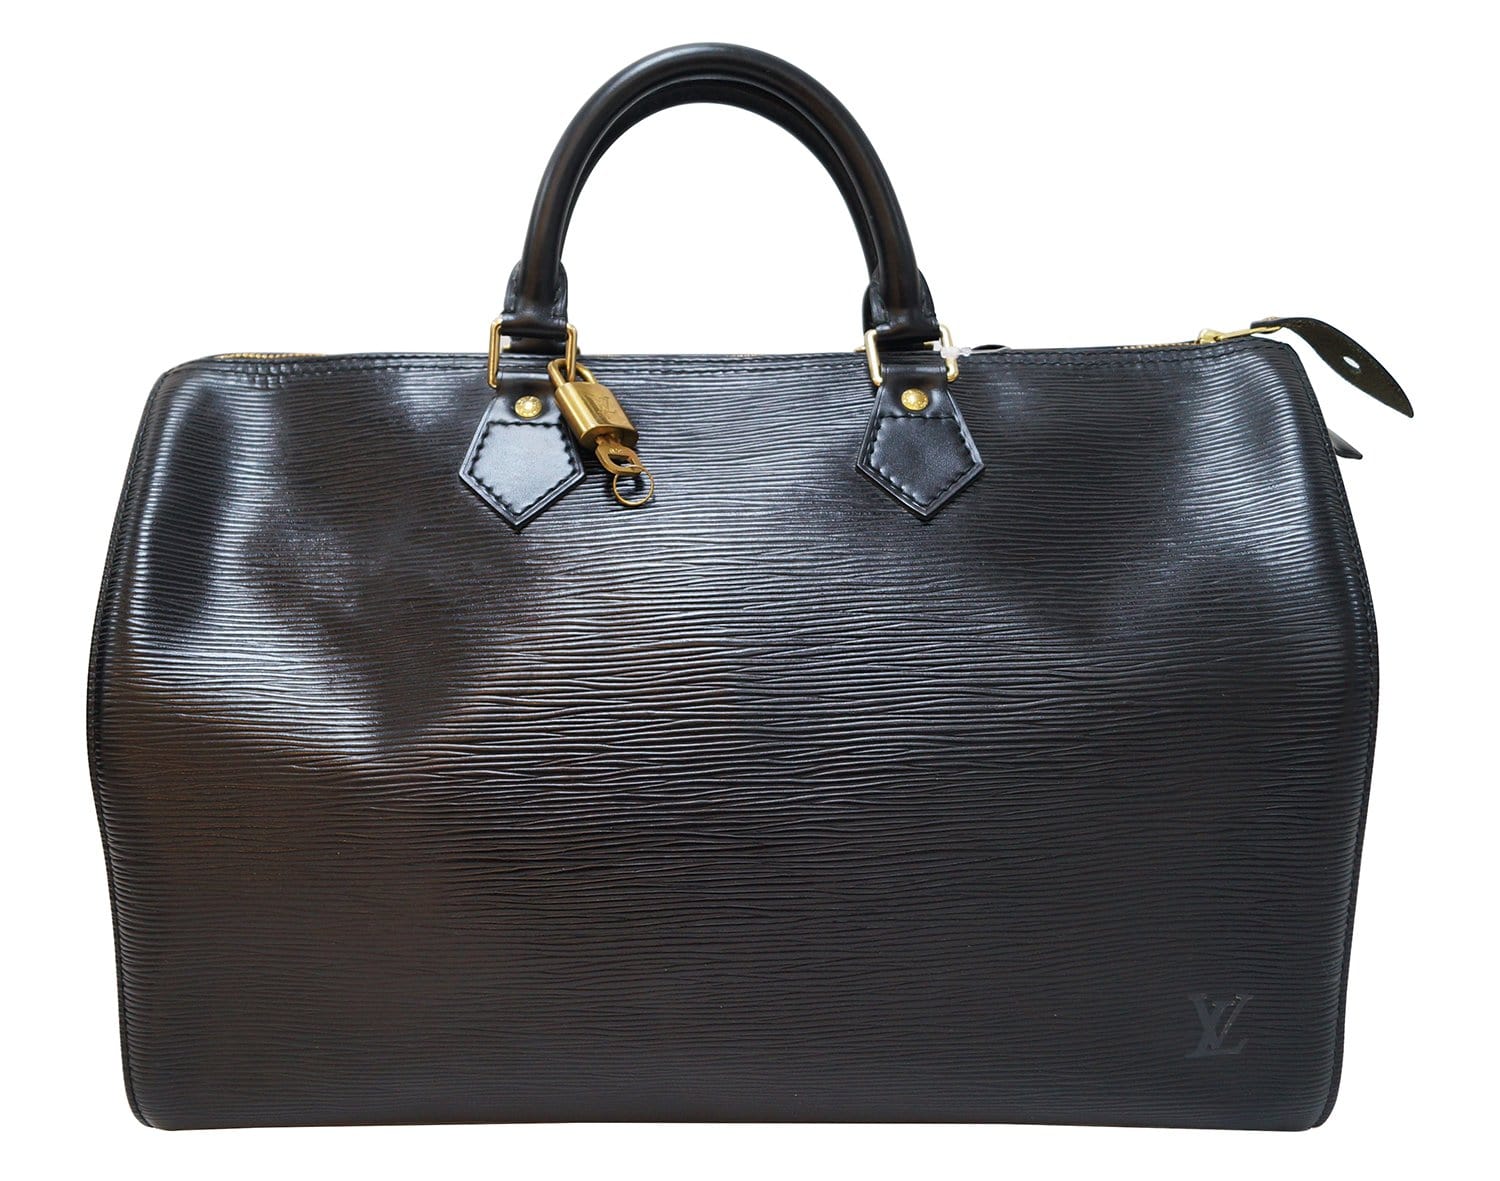 LOUIS VUITTON Epi Leather Speedy 35 Handbag